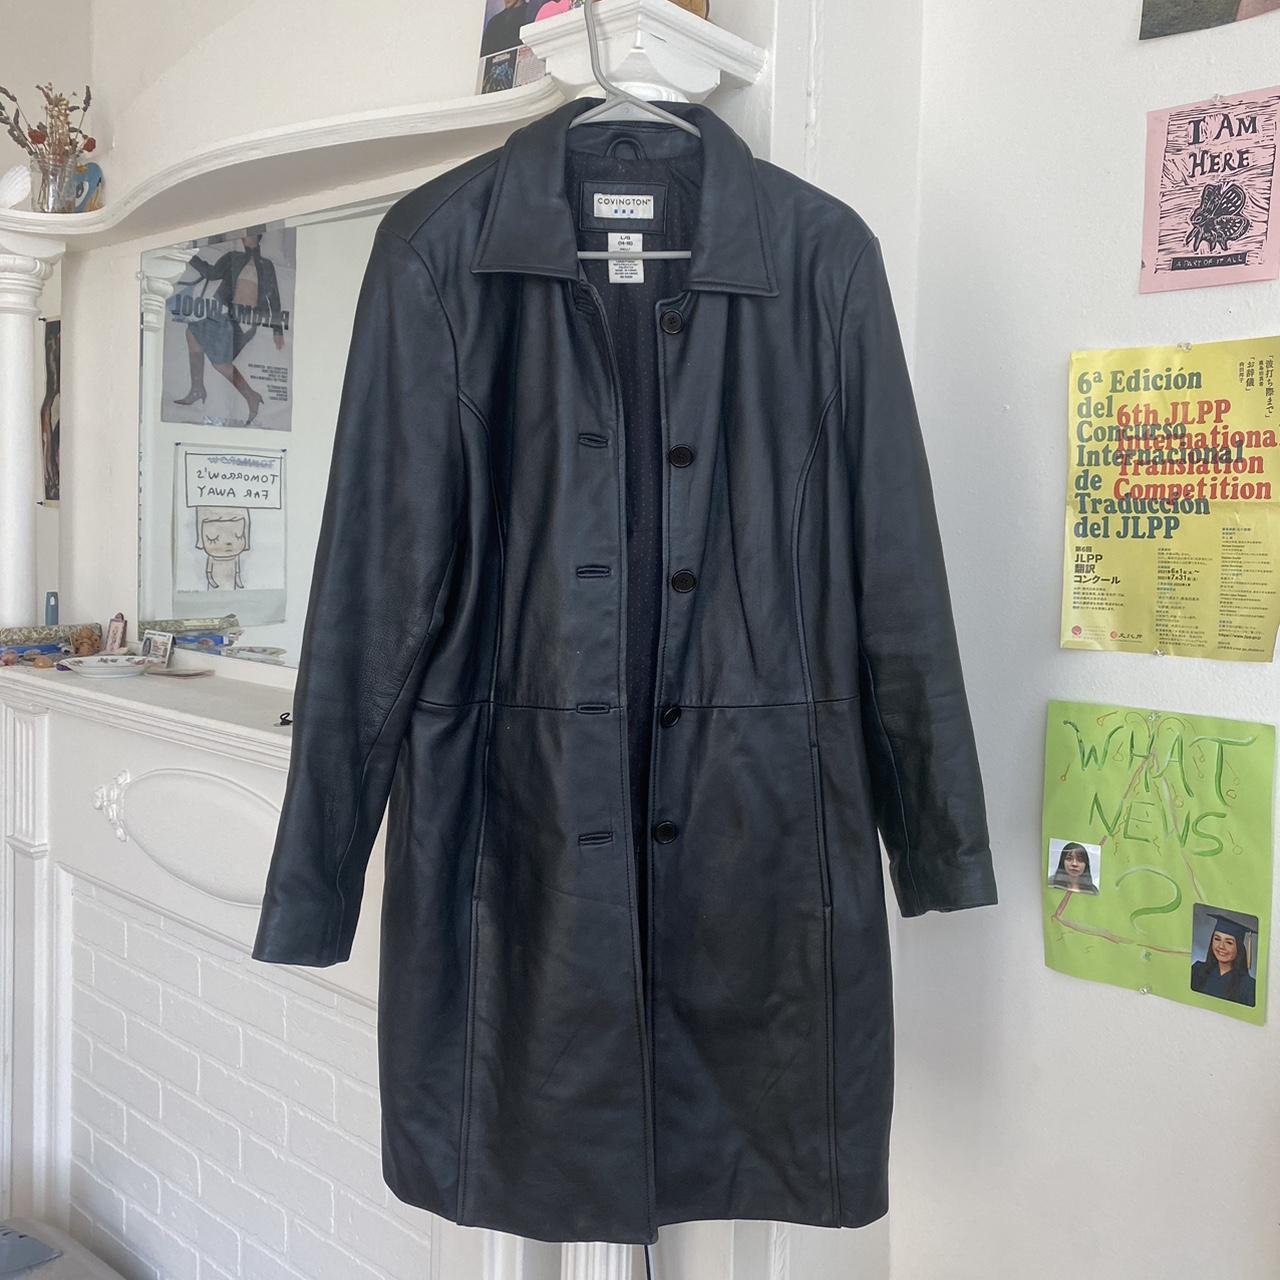 Vintage black leather coat Knee length, real... - Depop